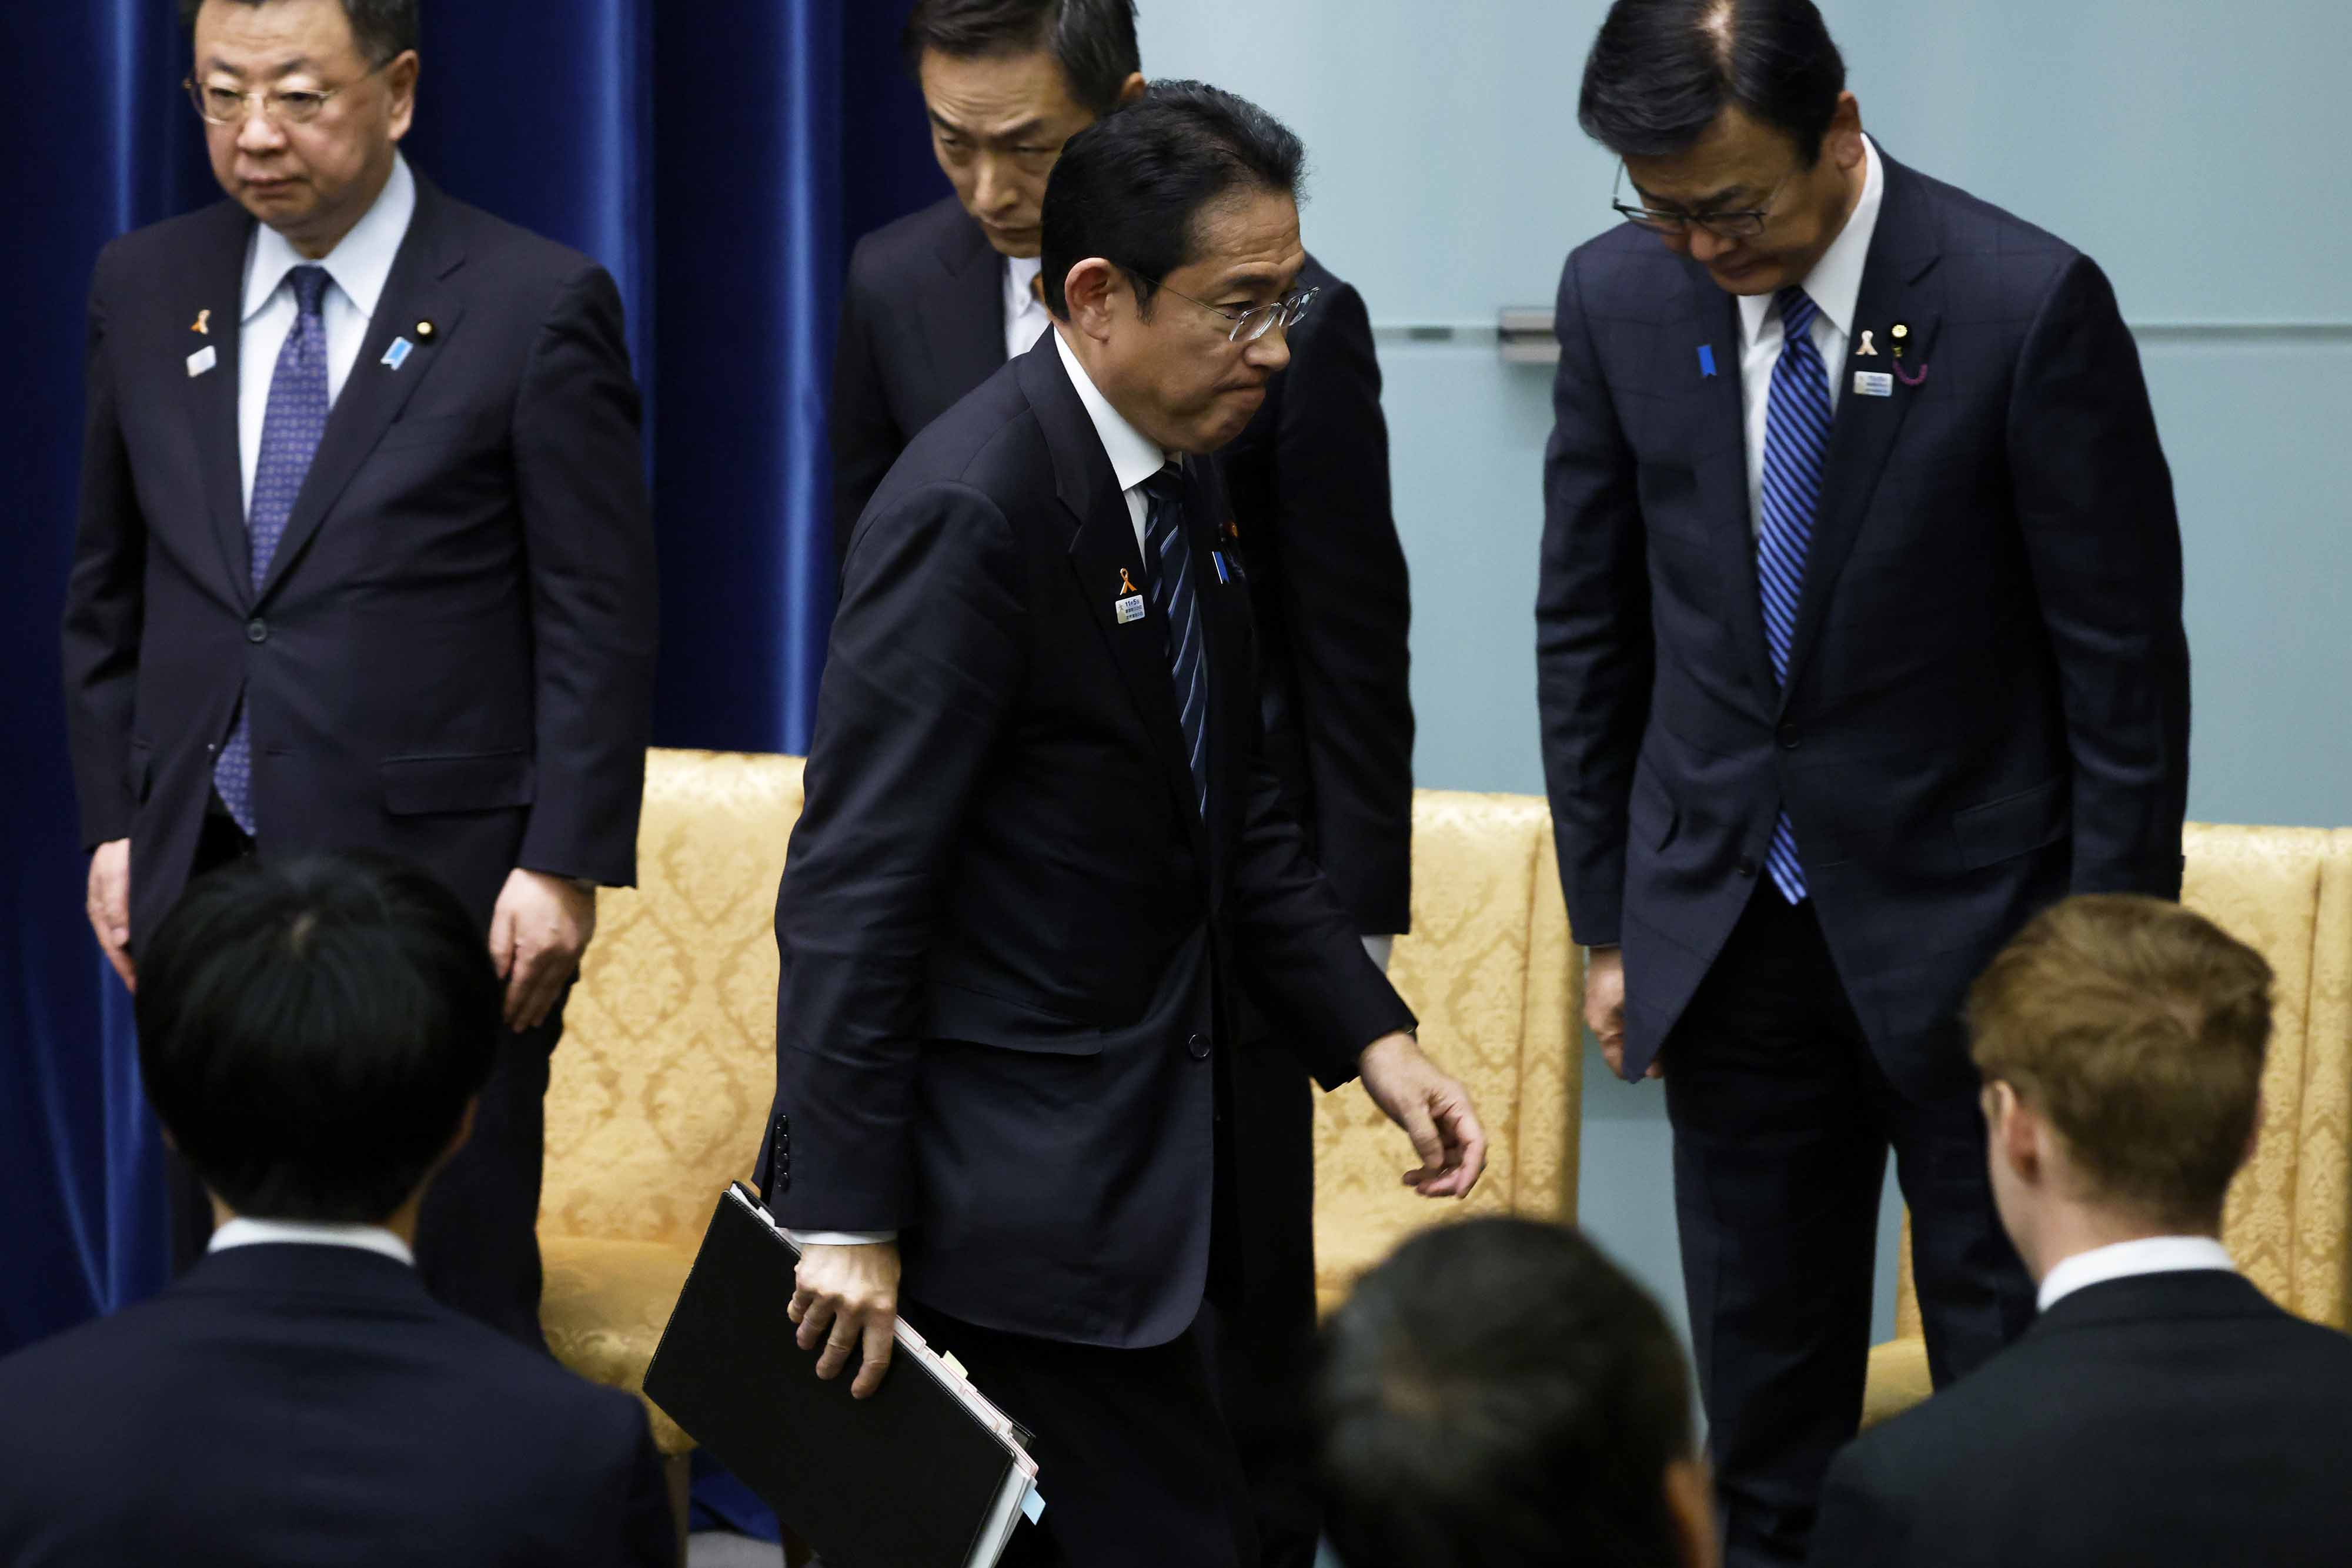 11月2日，在日本东京首相官邸，日本首相岸田文雄在新闻发布会后离开会场。

日本政府2日召开临时内阁会议，通过了一项包括减税在内的经济刺激计划，总额超过17万亿日元（1美元约合150日元）。